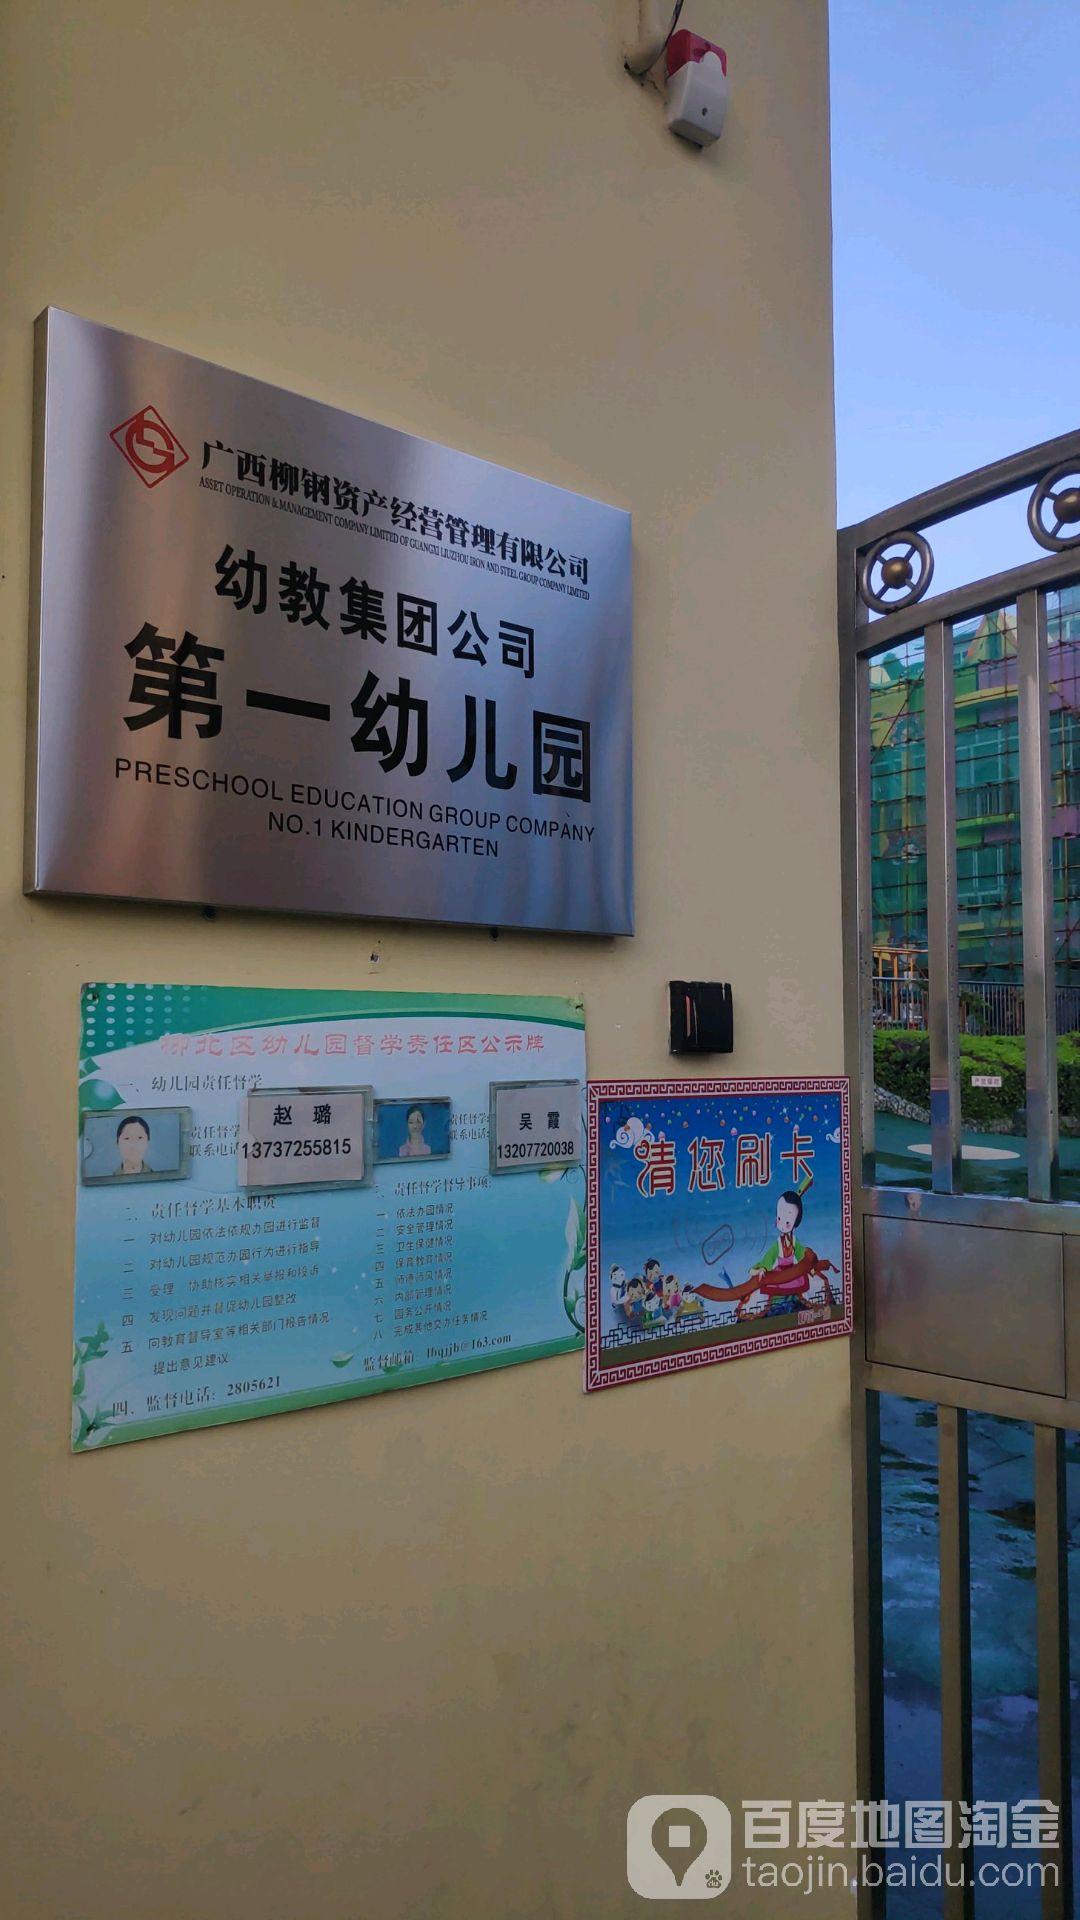 广西柳州钢铁(集团)公司物业管理公司第一幼儿园